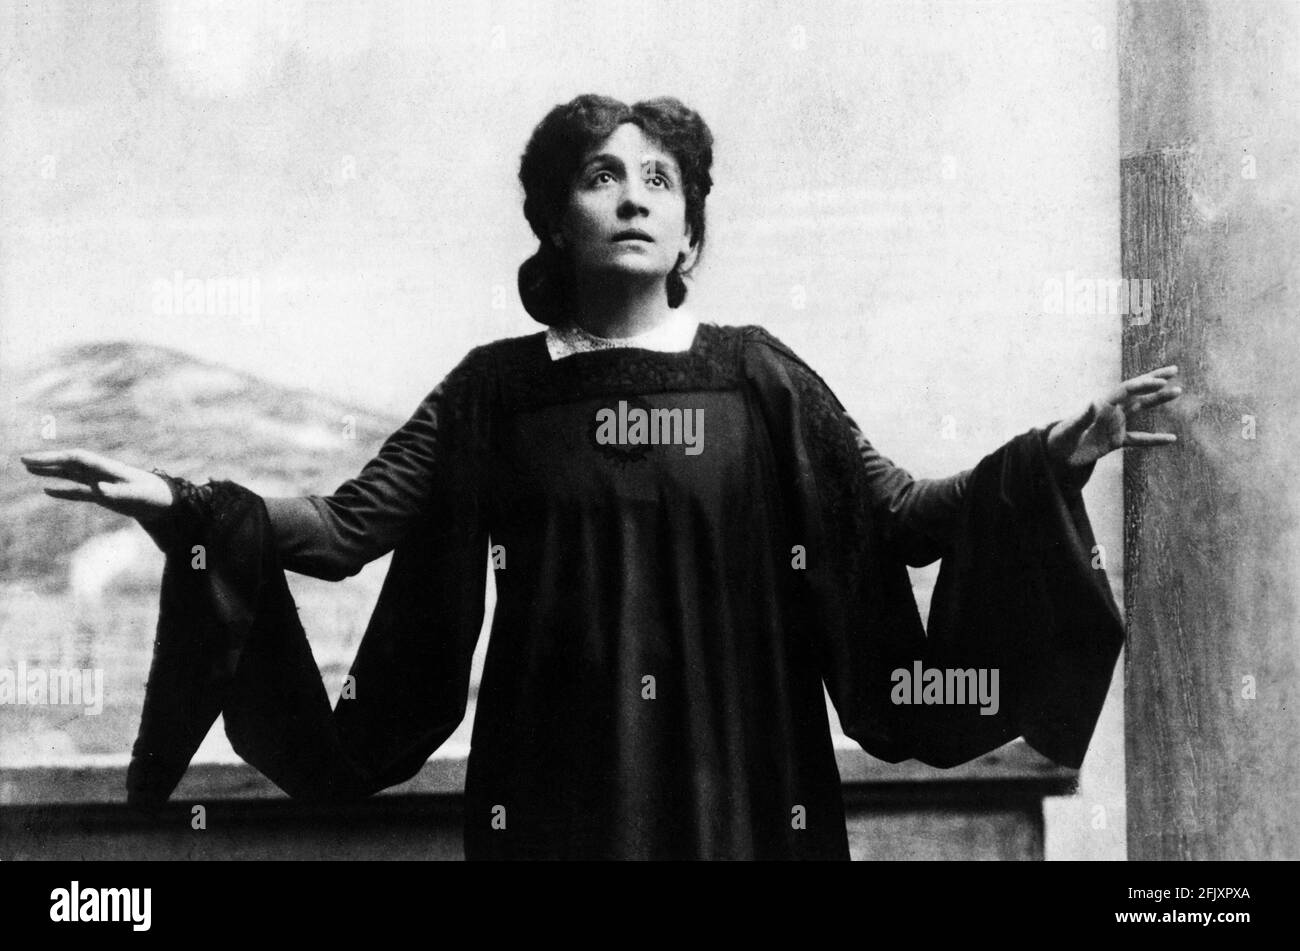 1896 , ITALIEN: Die berühmteste italienische Schauspielerin ELEONORA DUSE ( 1858 - 1924 ) in 'Città morta ' ( die Tote Stadt ) , Schauspiel von ihrer Geliebten GABRIELE D' ANNUNZIO , Kostüm von FORTUNY- THEATER - TEATRO - DANNUNZIO - D' ANNUNZIO - divina - attrice teatrale ---- Archivio GBB Stockfoto